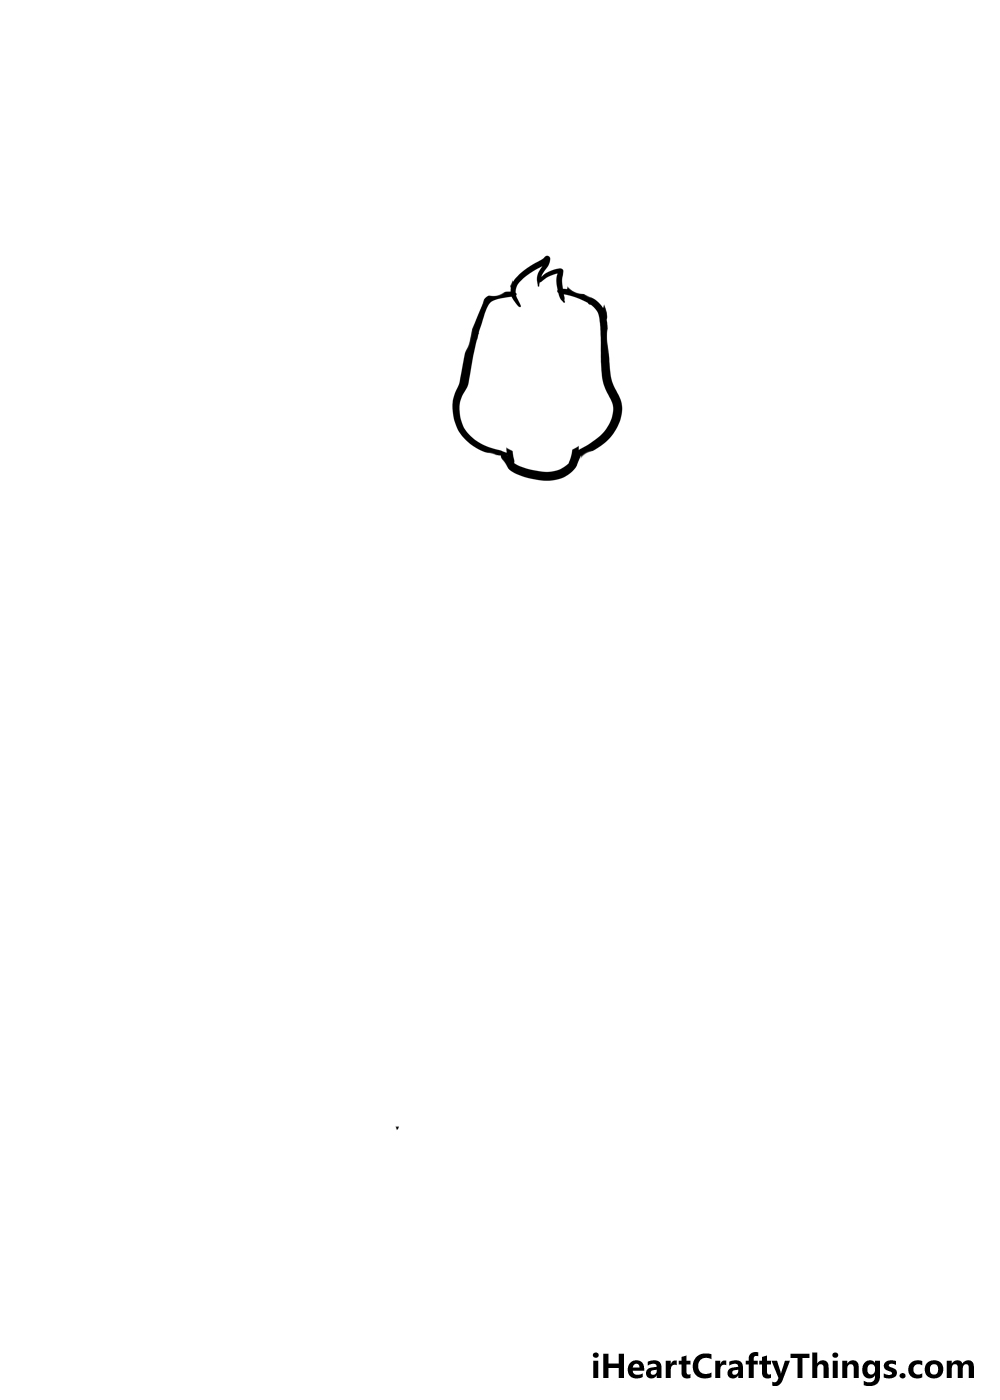 How to Draw A Cute Giraffe step 1